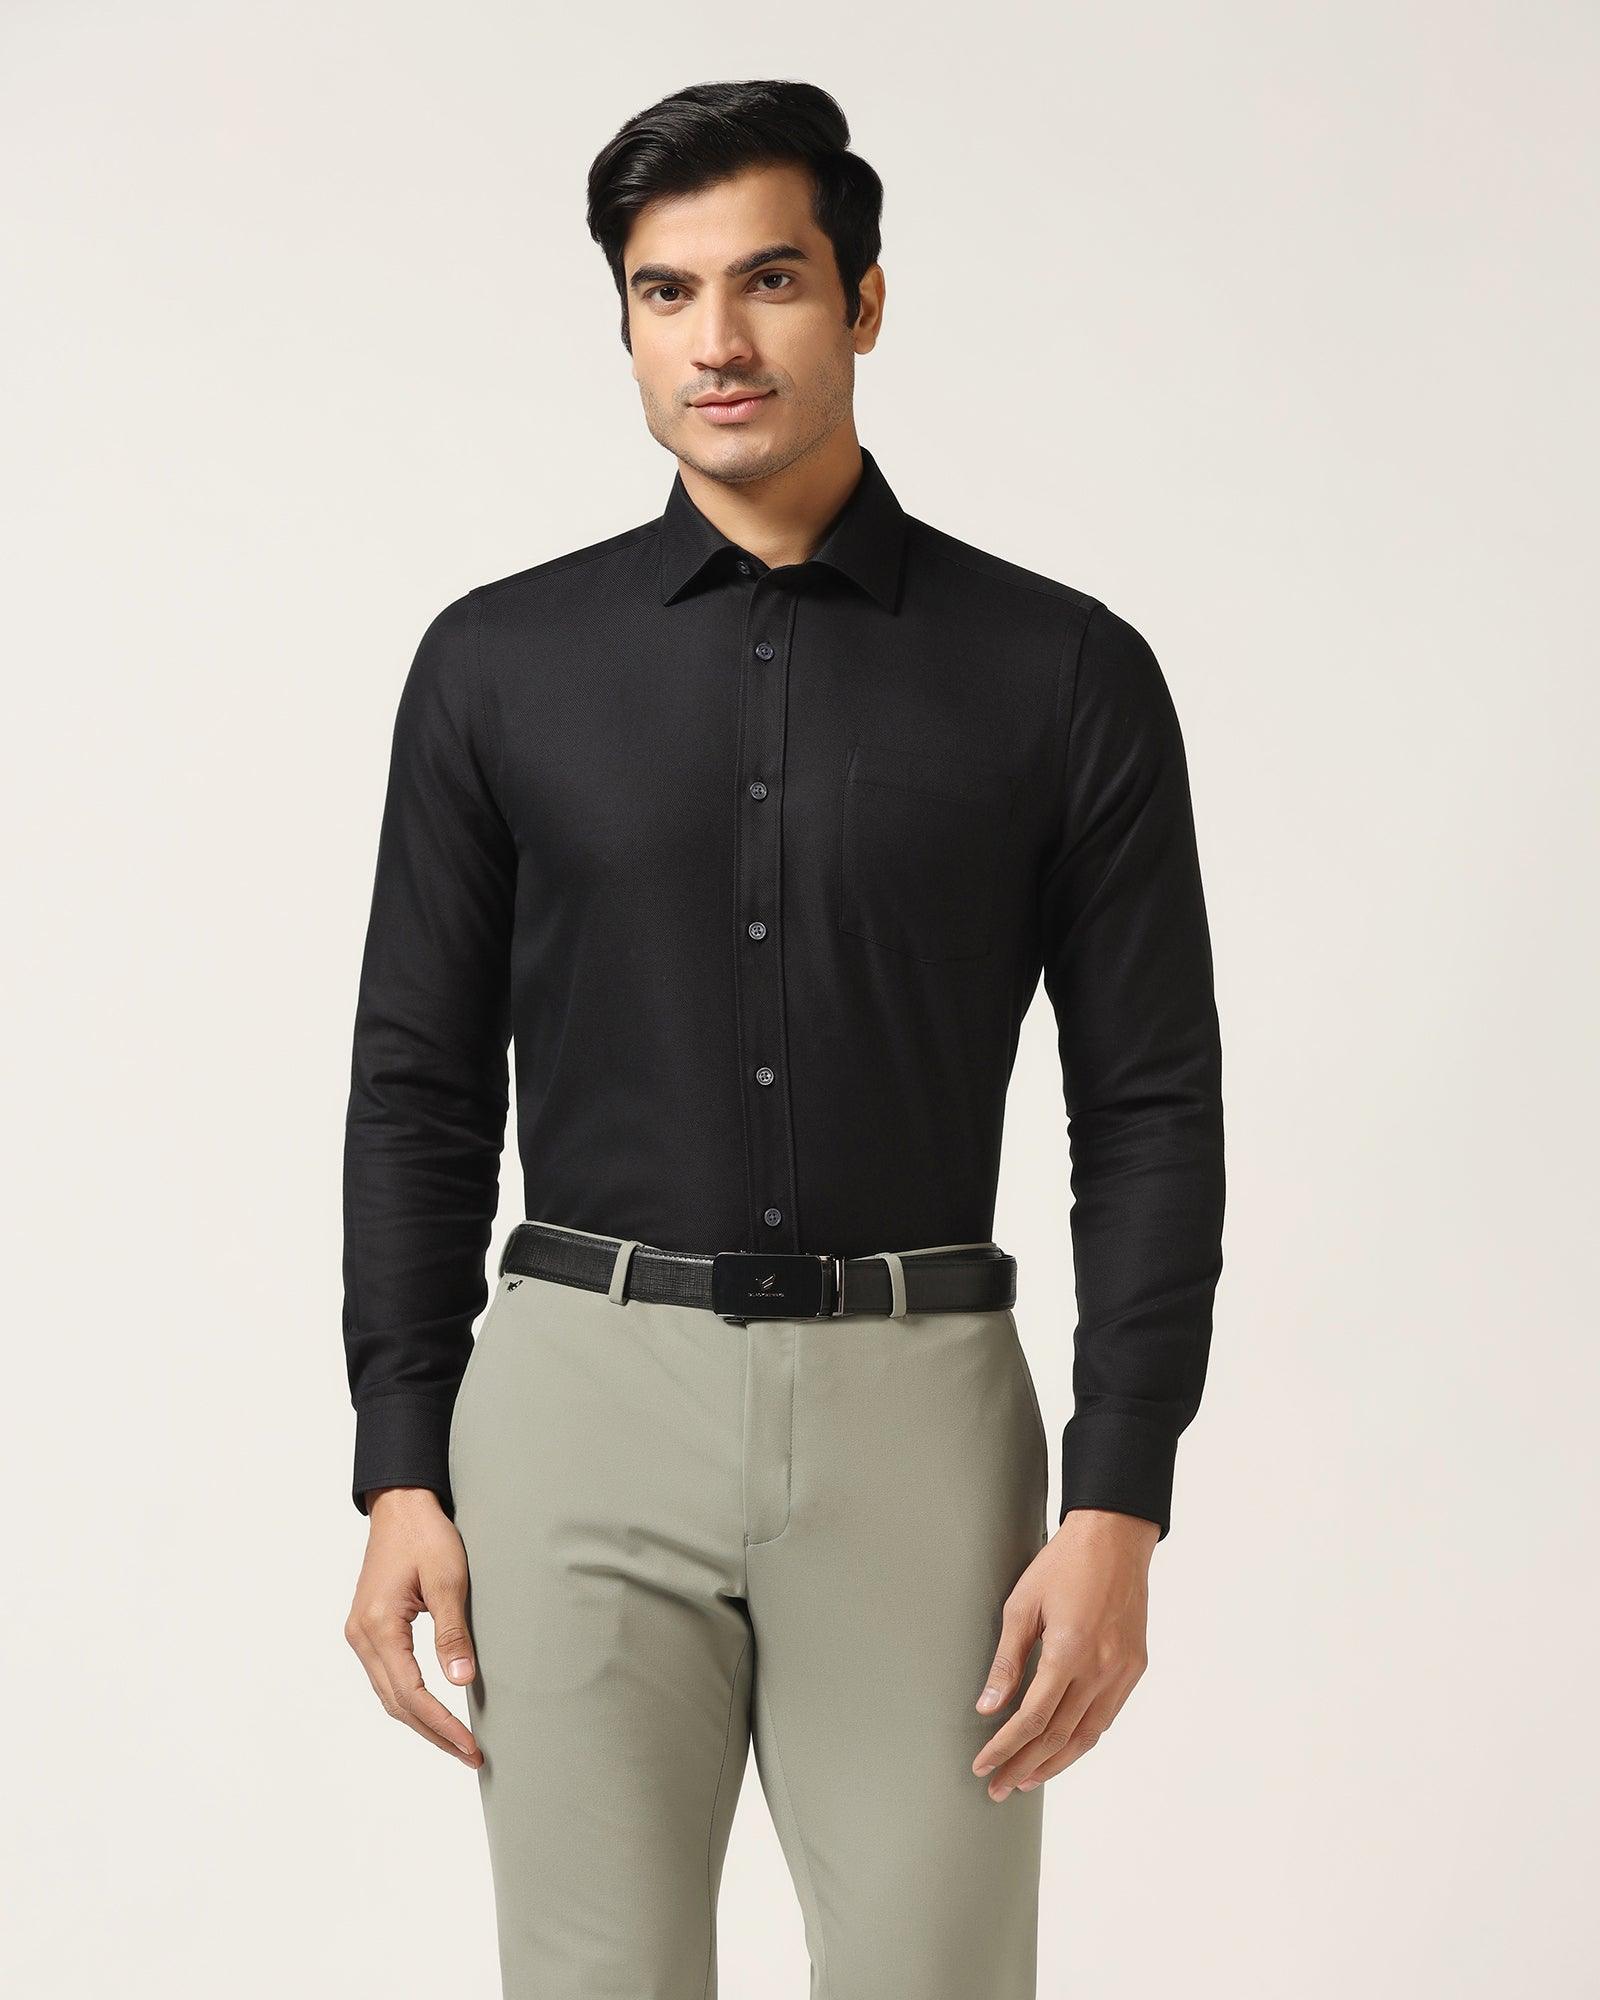 Temptech Formal Black Solid Shirt - Antony